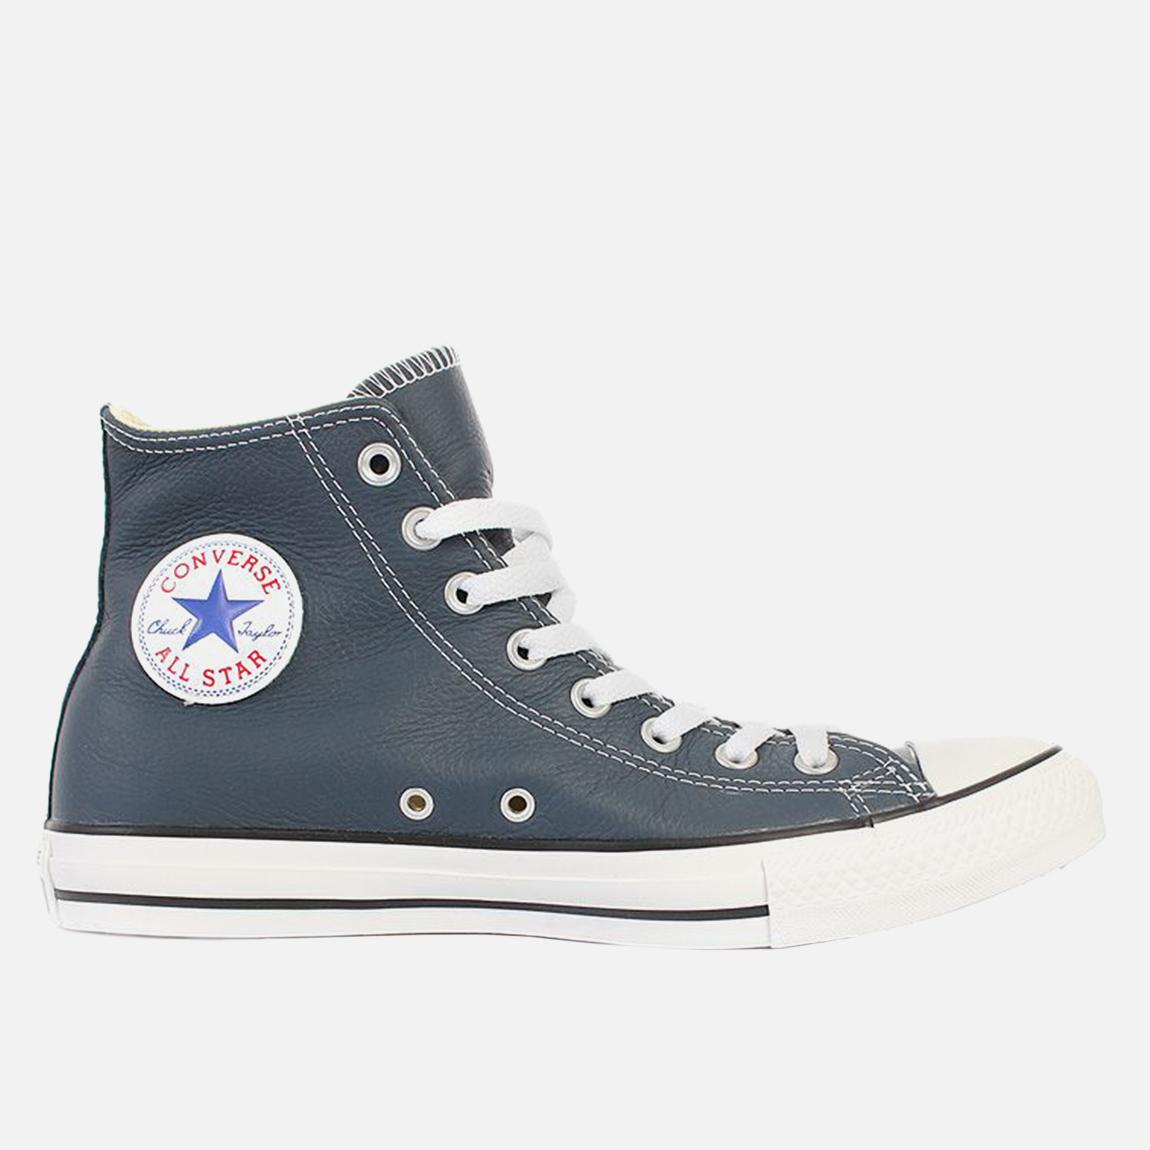 Chuck Taylor All Star Hi - Moonlight Converse Sneakers | Superbalist.com